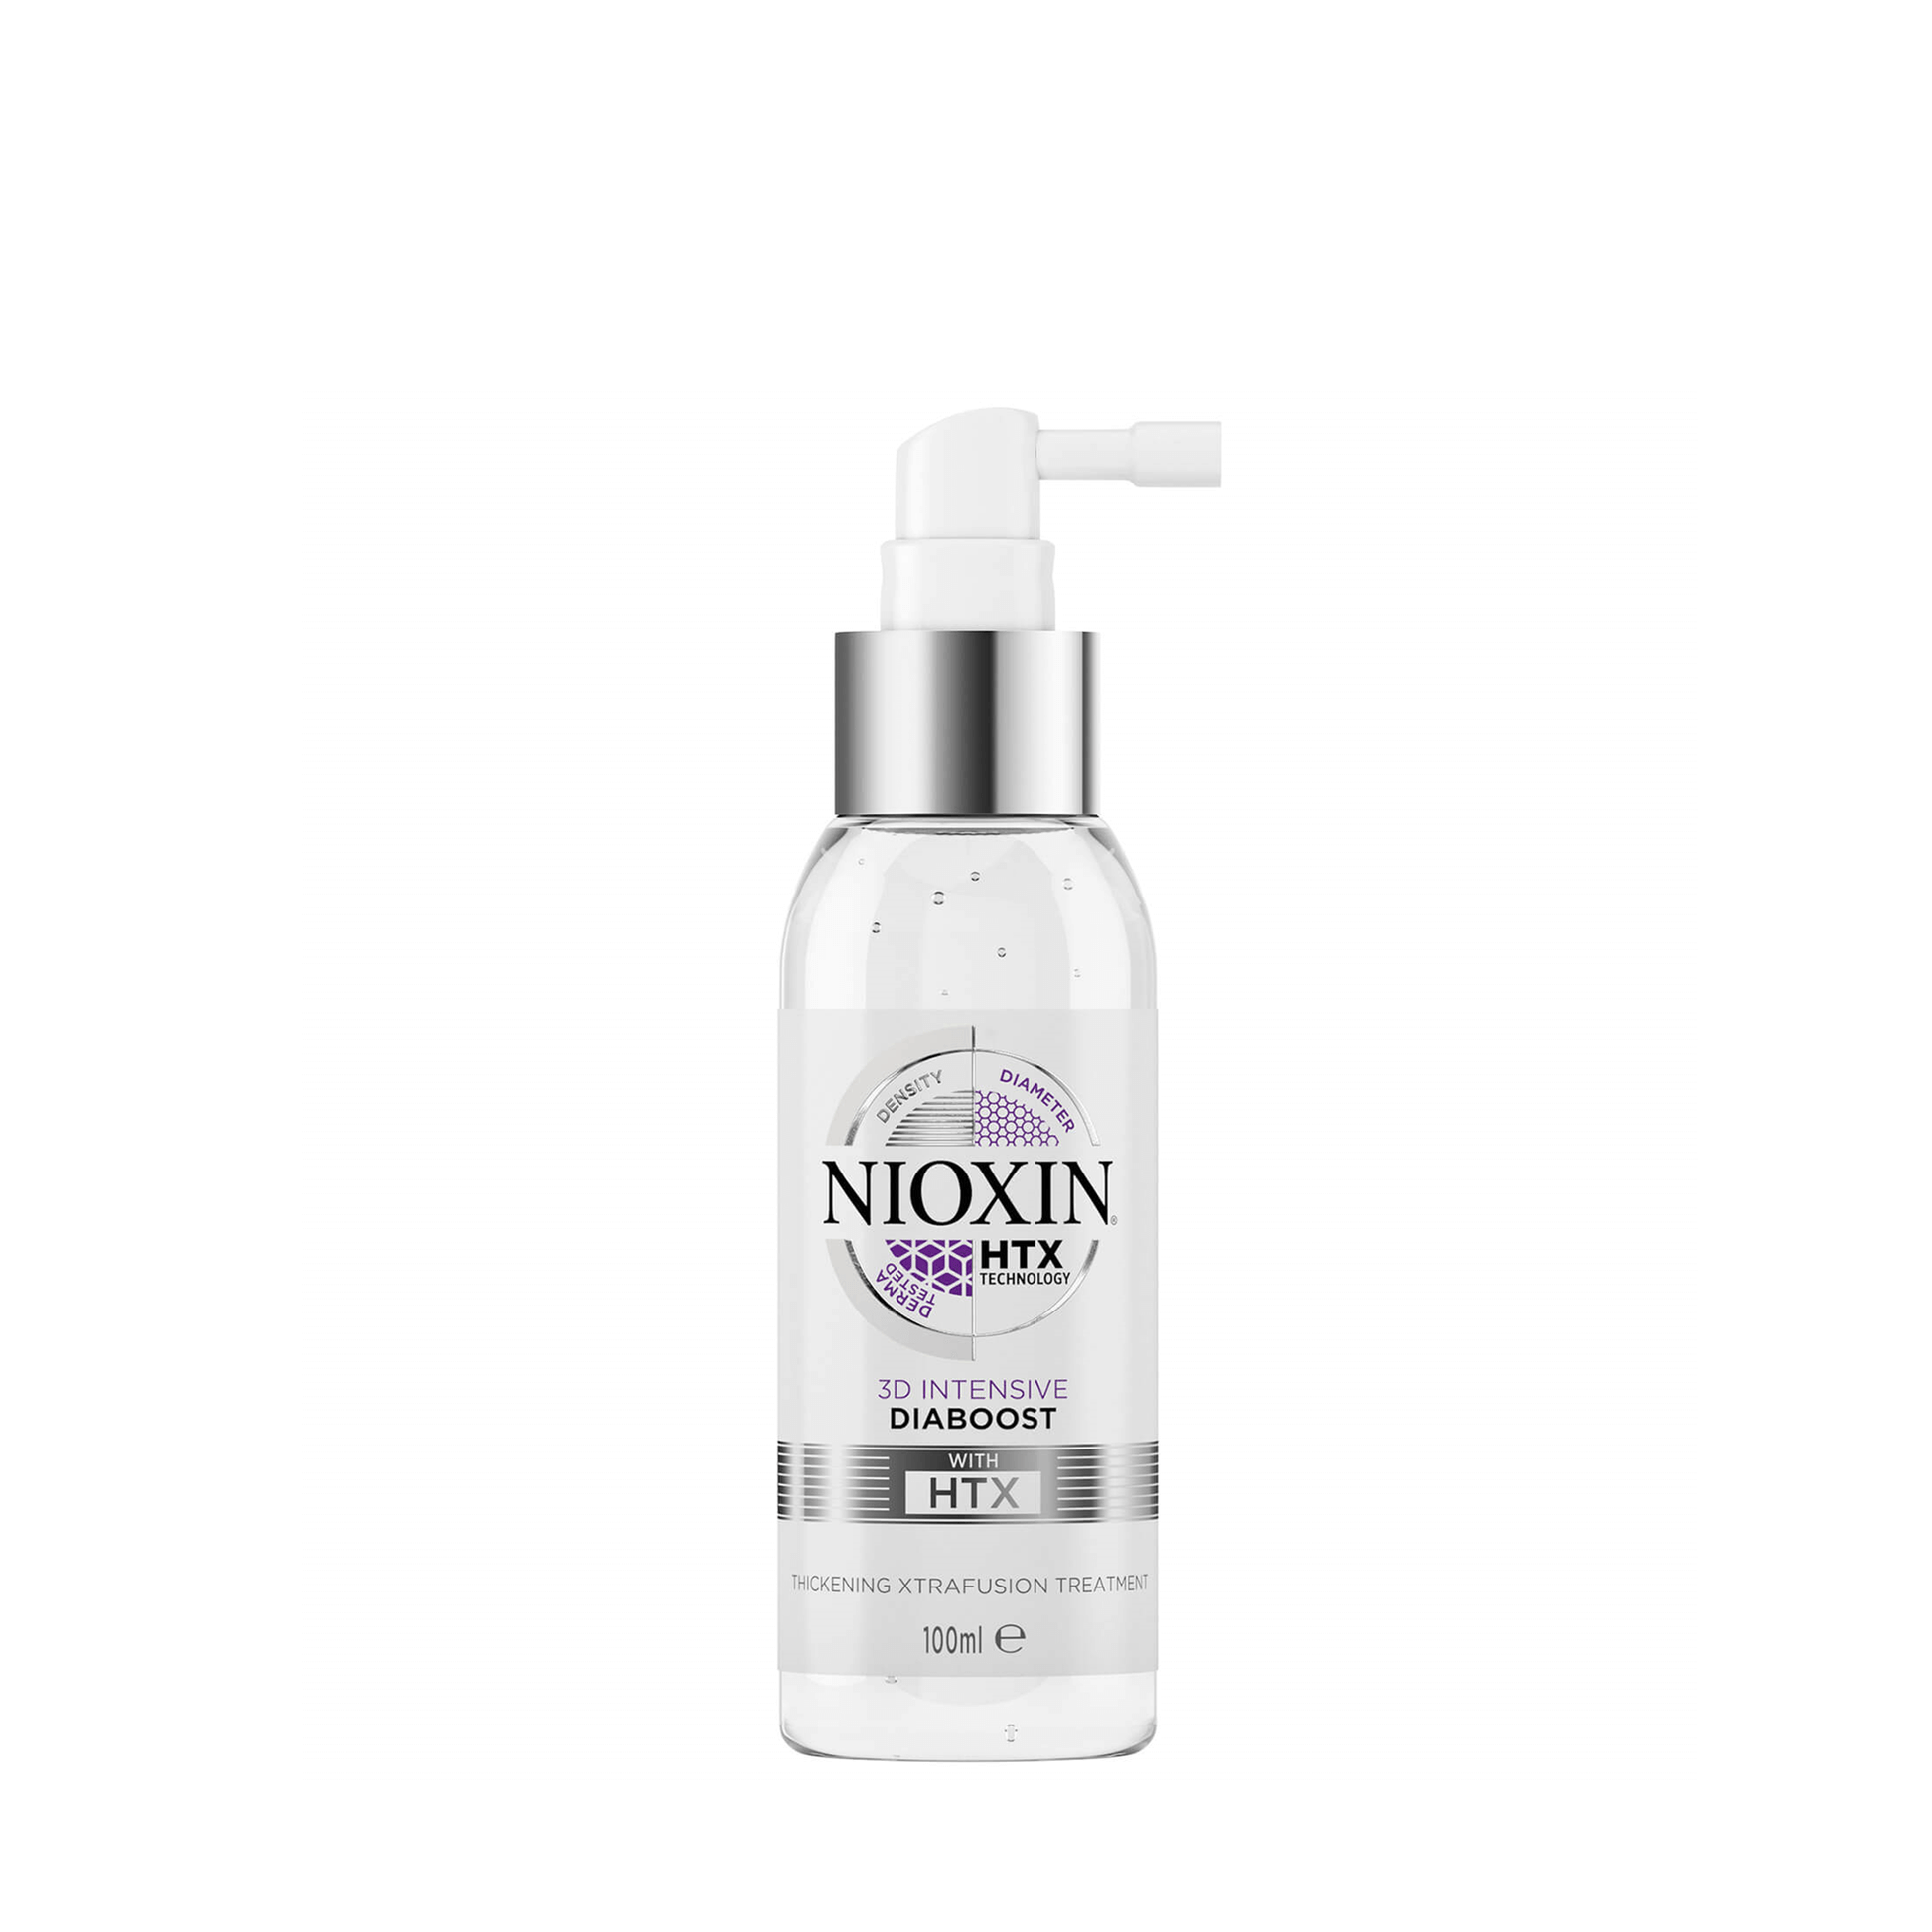 Nioxin 3D Intensive Care Diaboost Hair Thickener 100ml